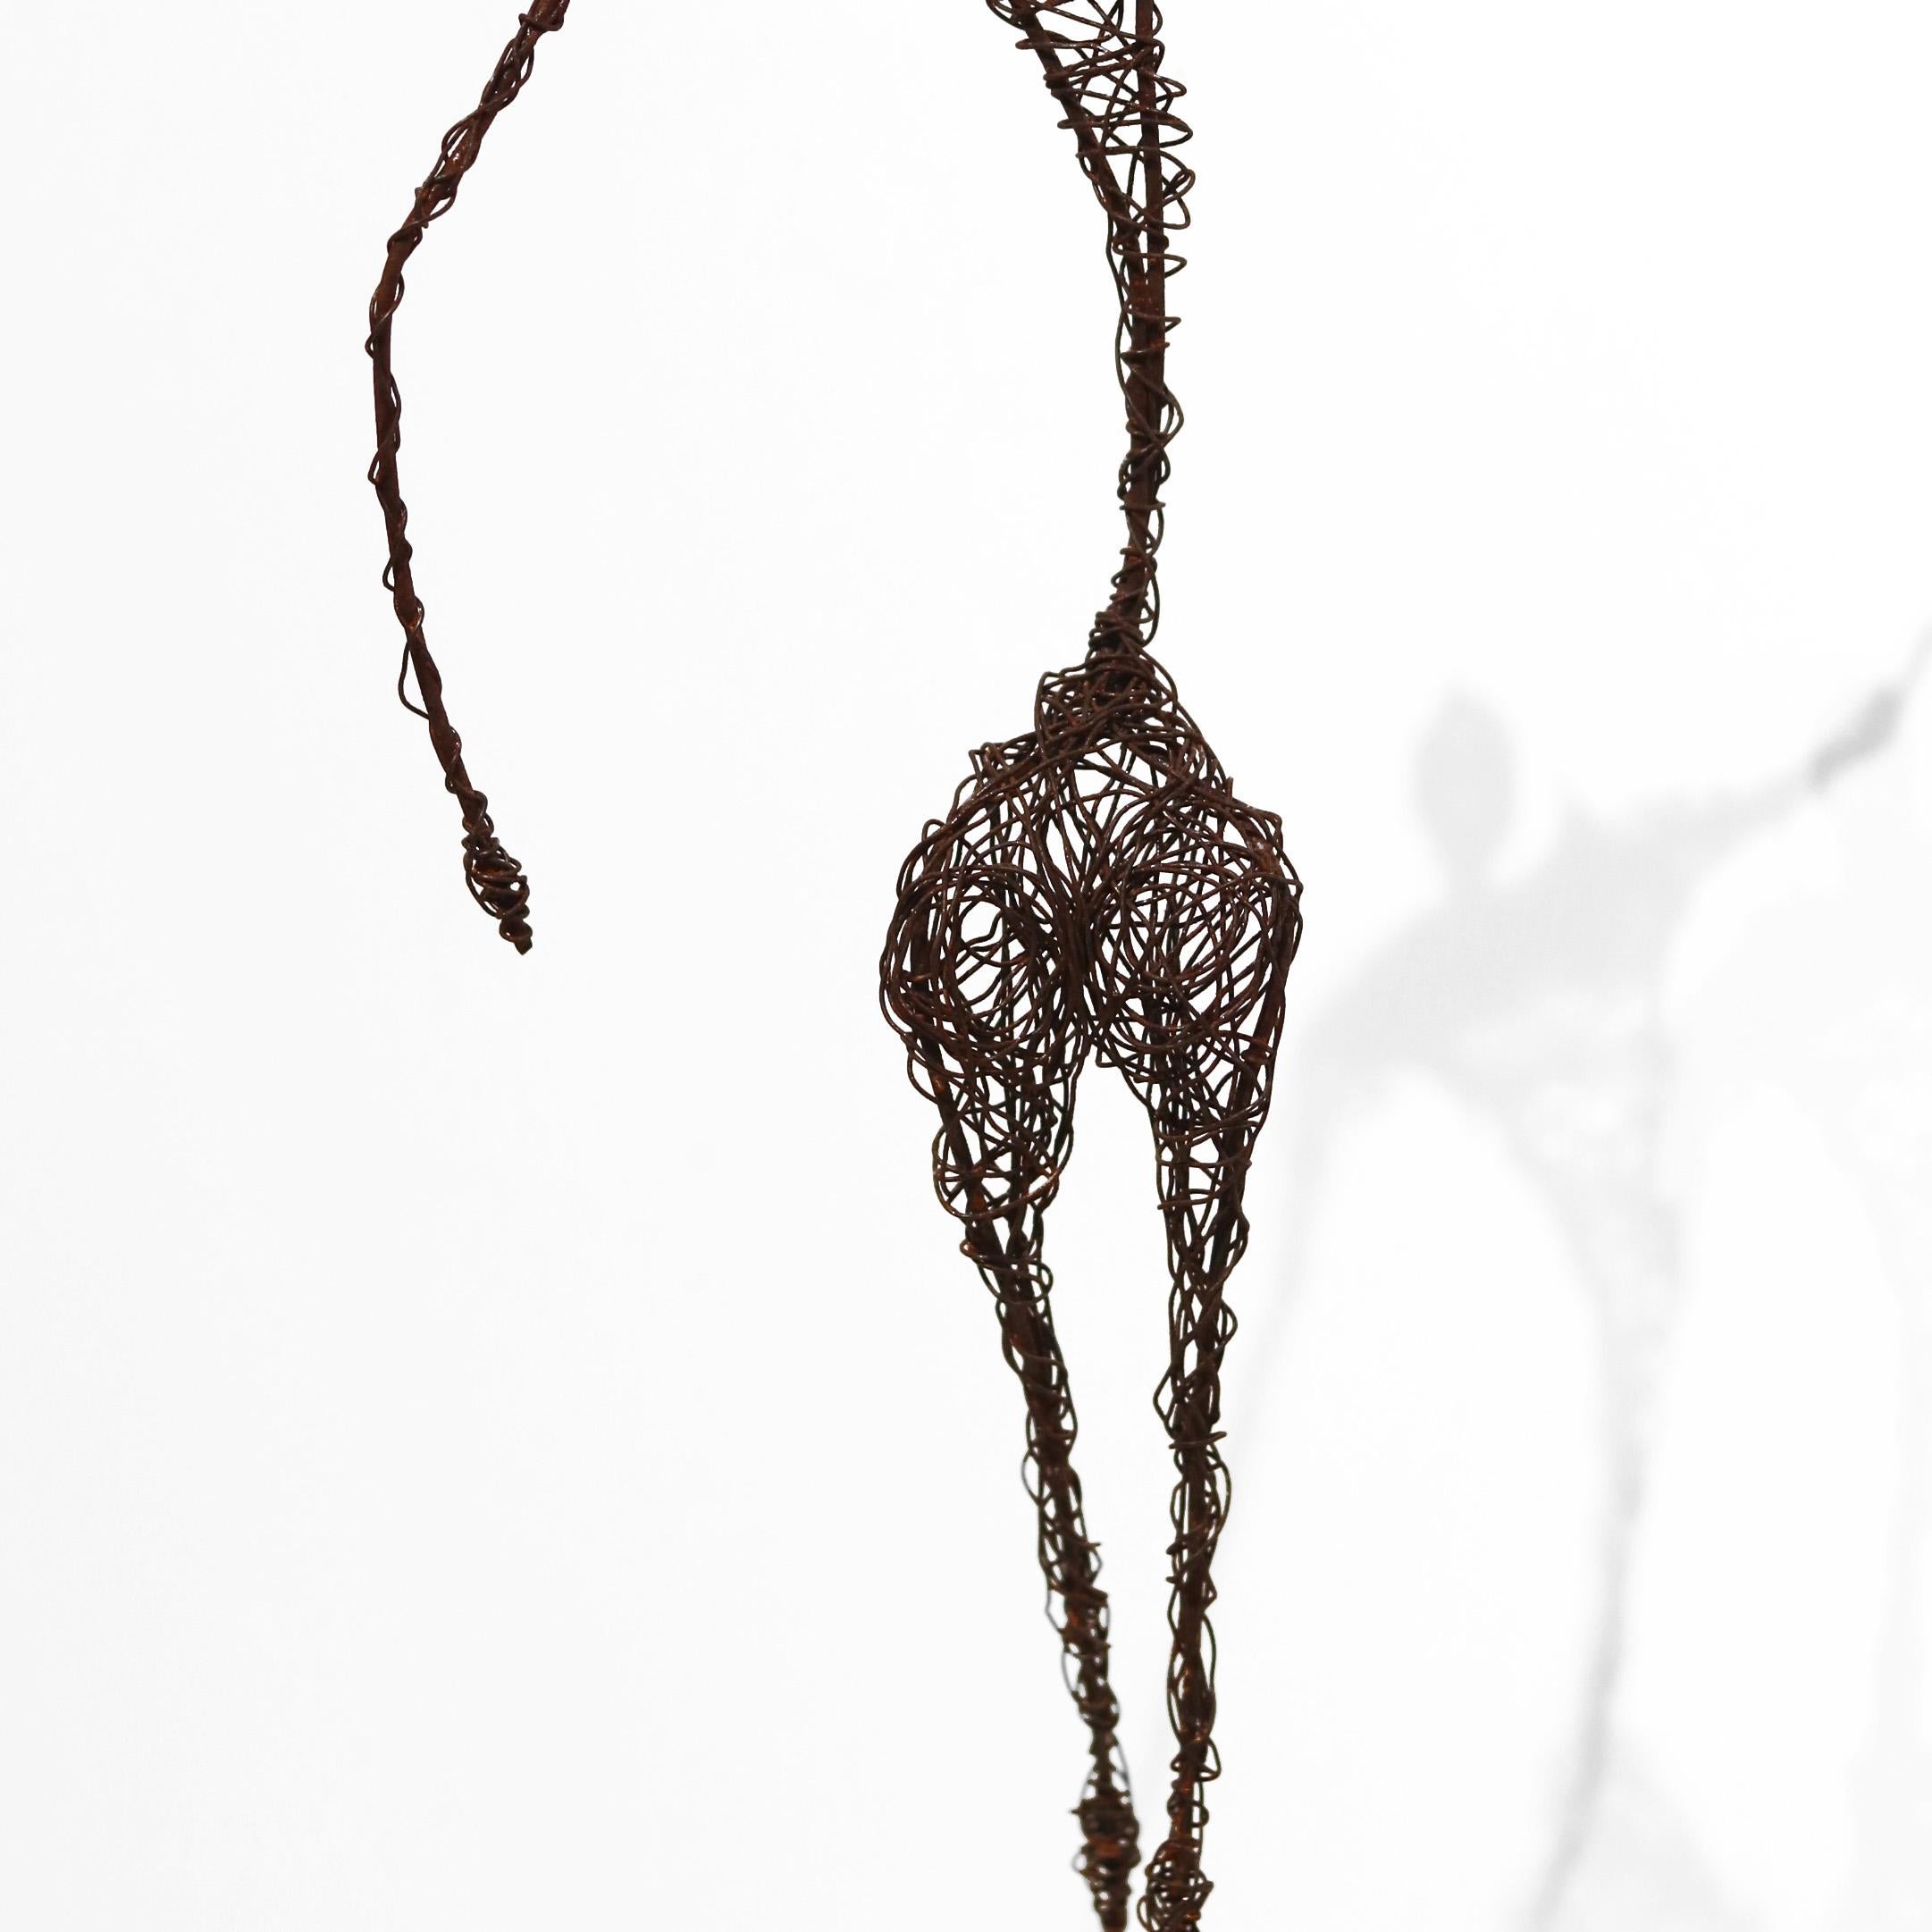 Les figures métalliques de Susy Hunziker sont le résultat d'une exploration des formes, des couleurs et des sentiments, et reflètent un amour de la vie et de l'esthétique. Le fil de fer brun rouille est enroulé méticuleusement en différentes